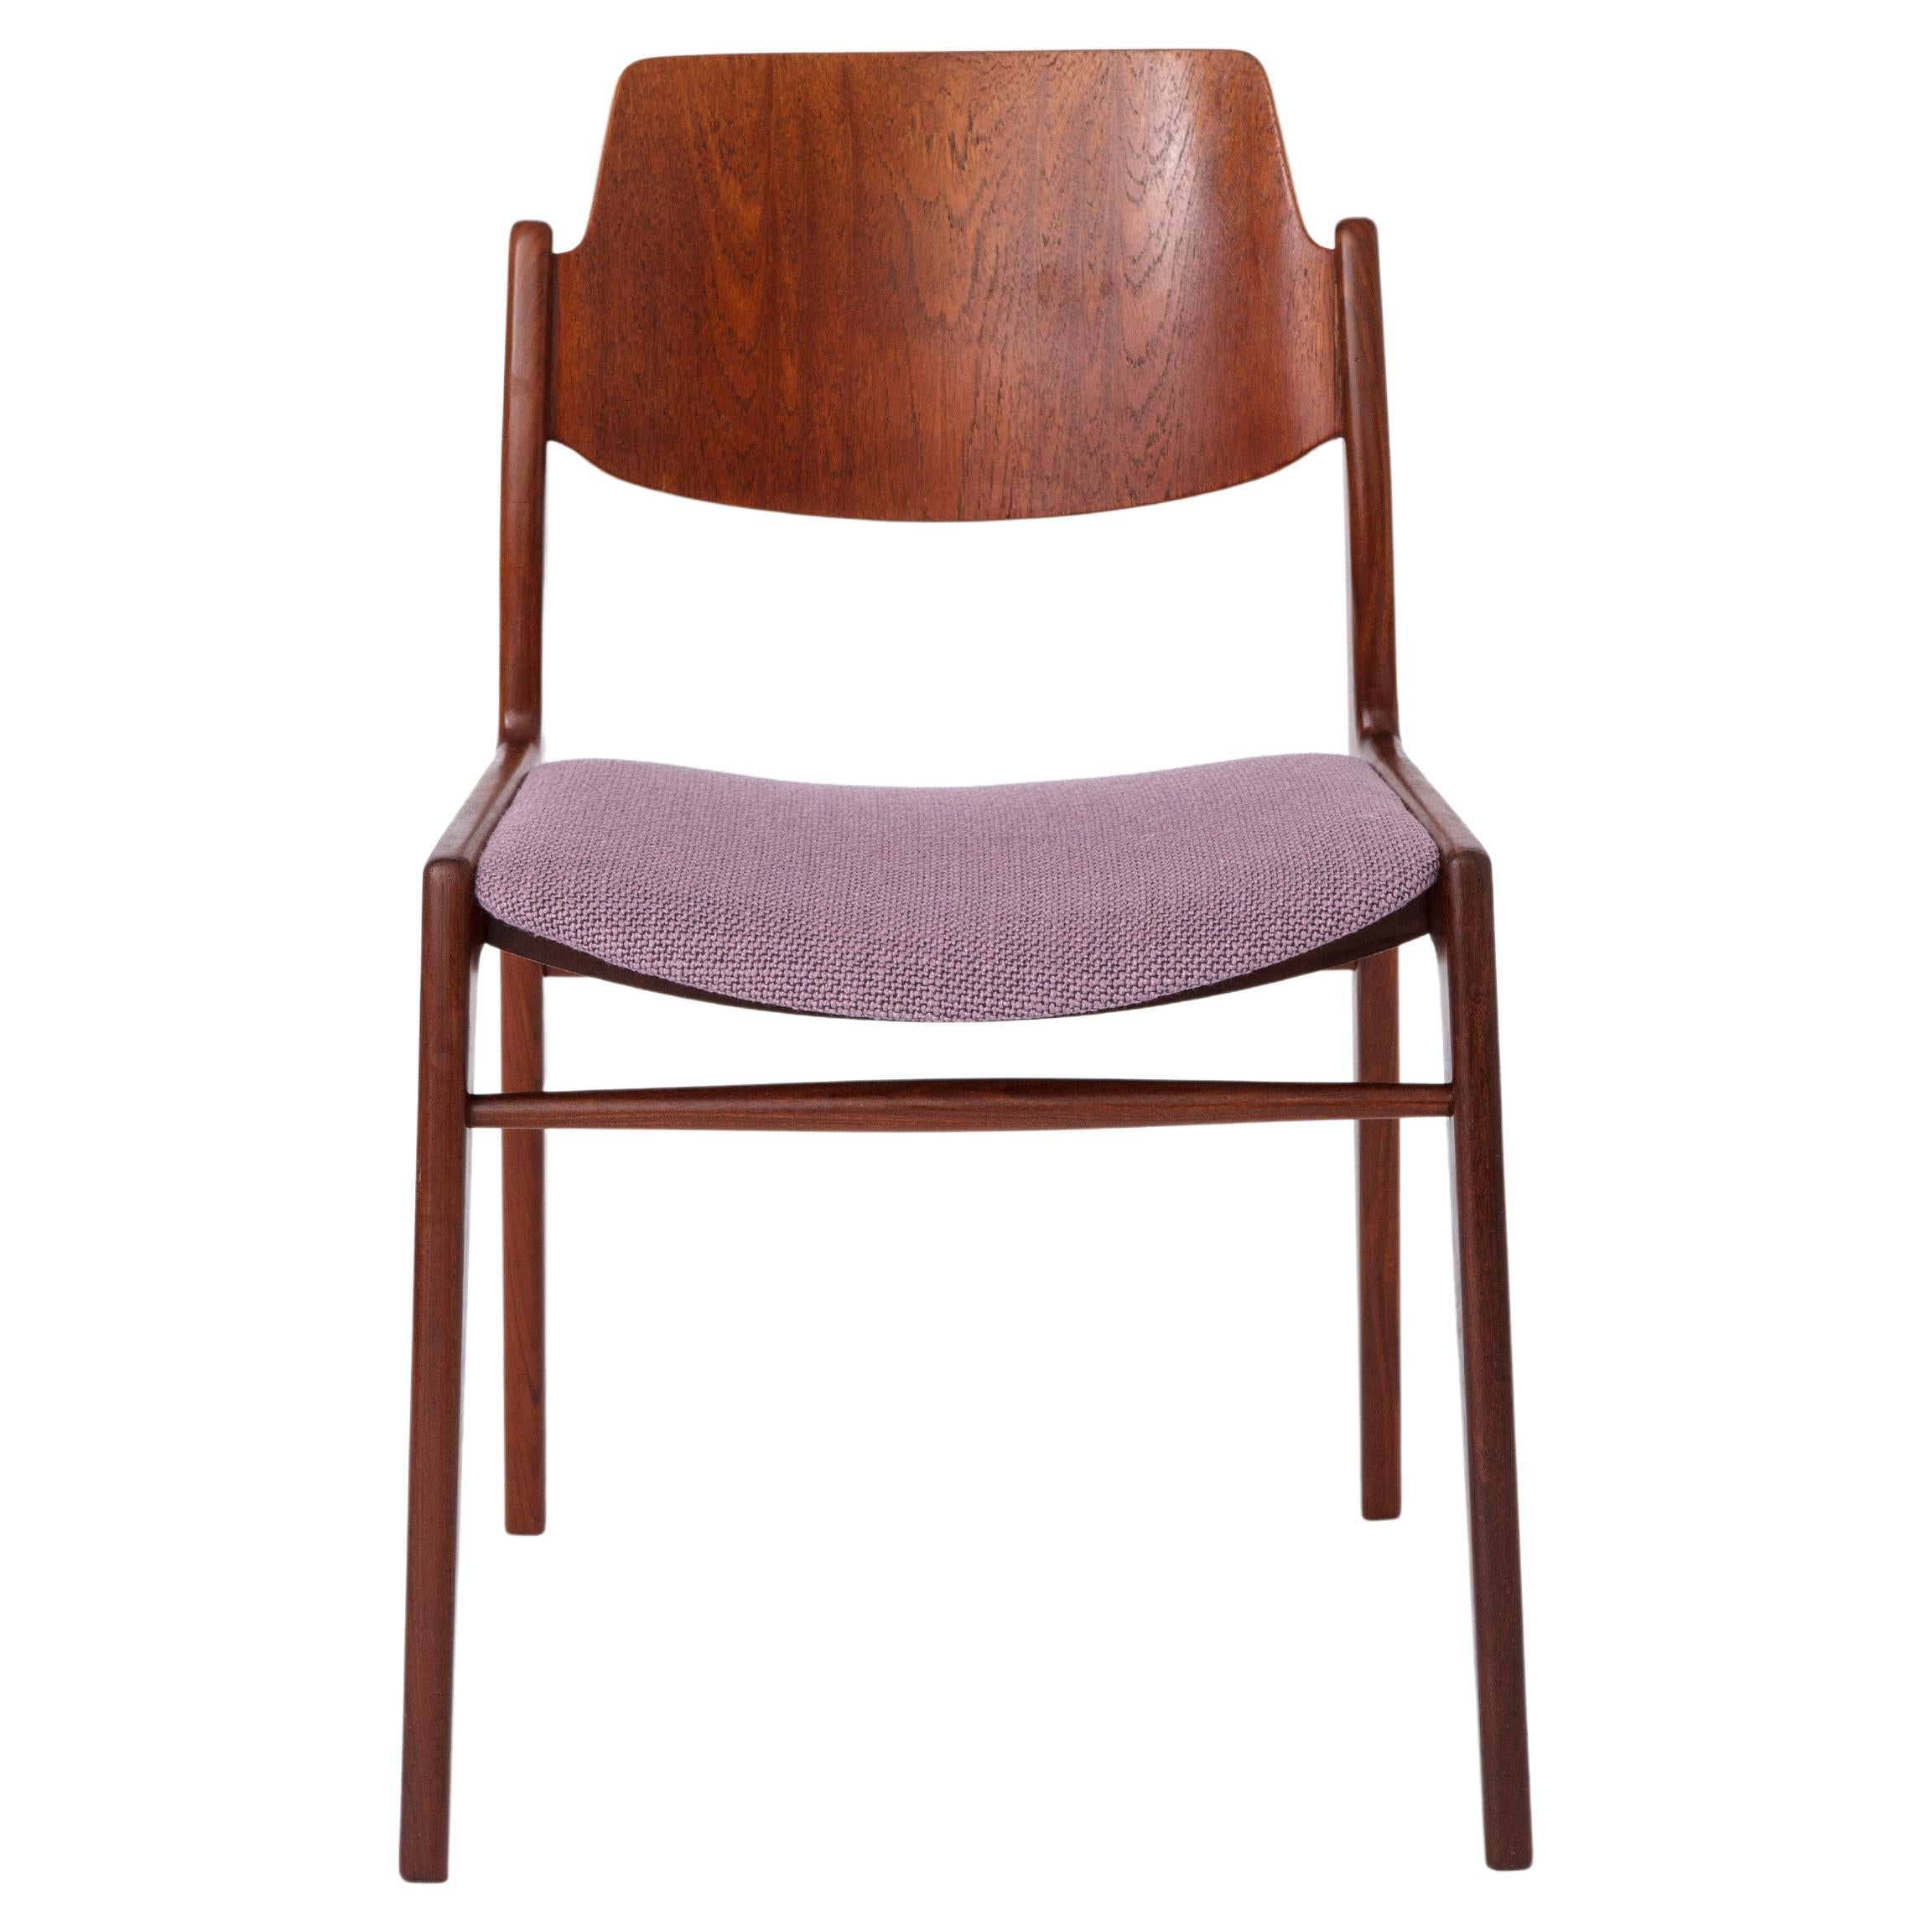 Vintage-Stuhl von Hartmut Lohmeyer, 1960er Jahre, für Wilkhahn, Deutschland